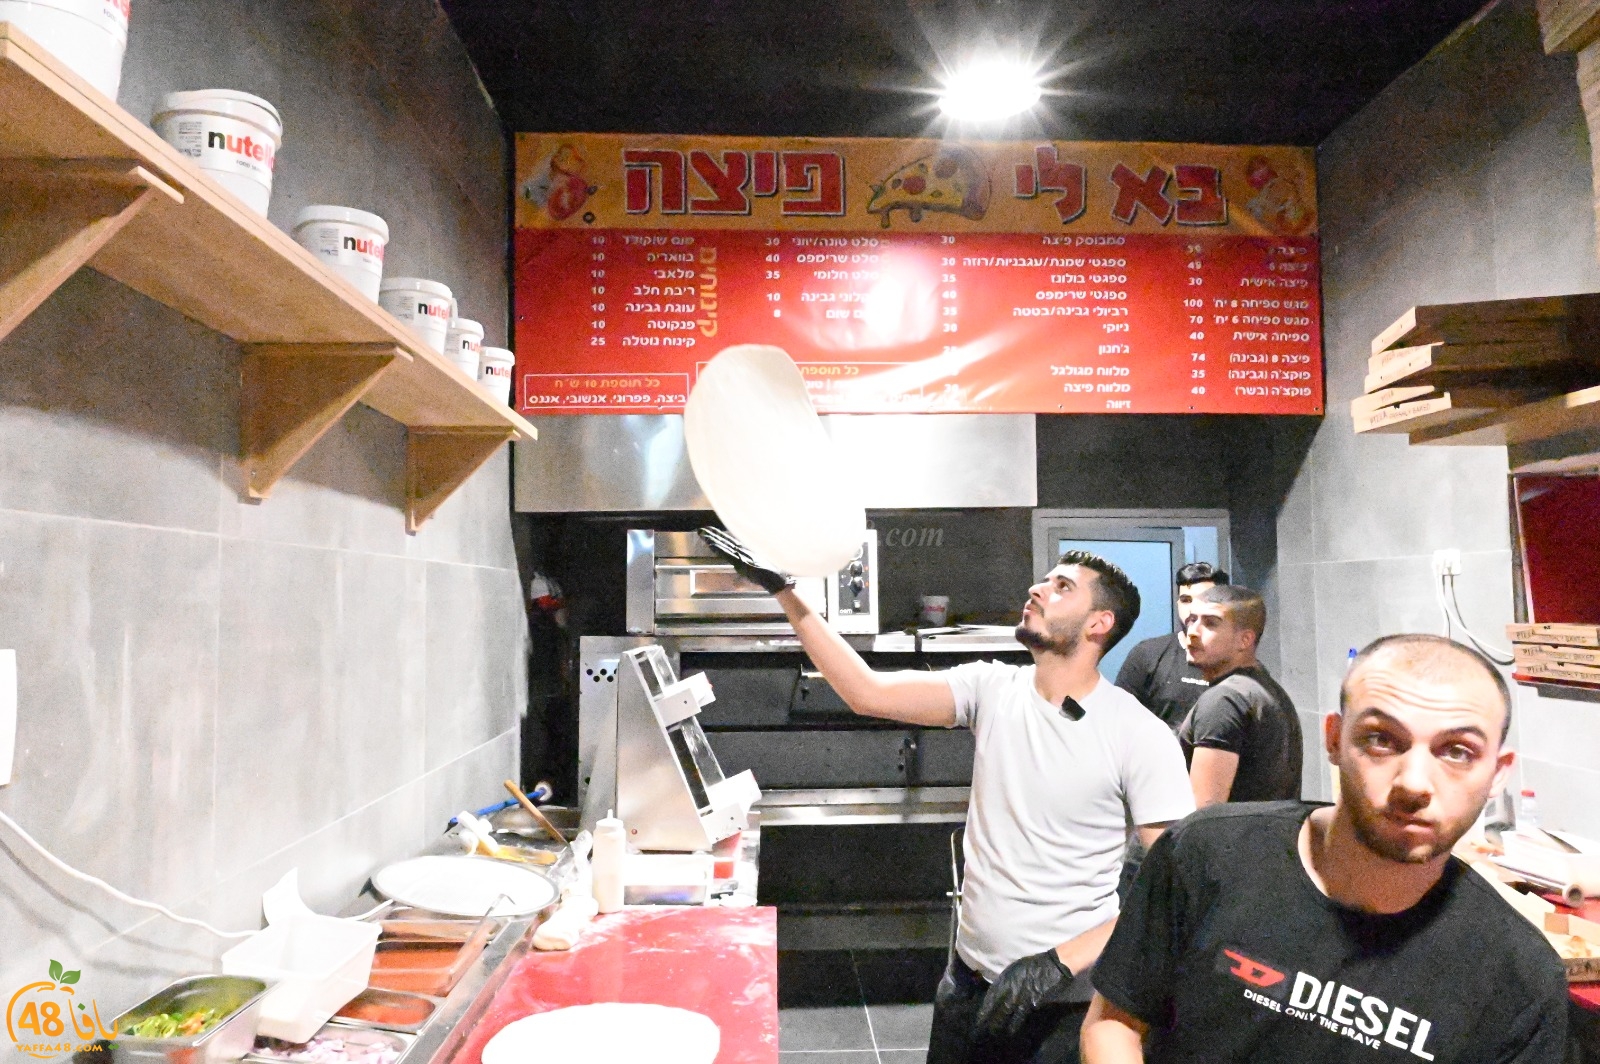 بالصور : بالي بيتسا يقدم بيتزا عائلية ب 59 شيكل مع كولا مجاناً